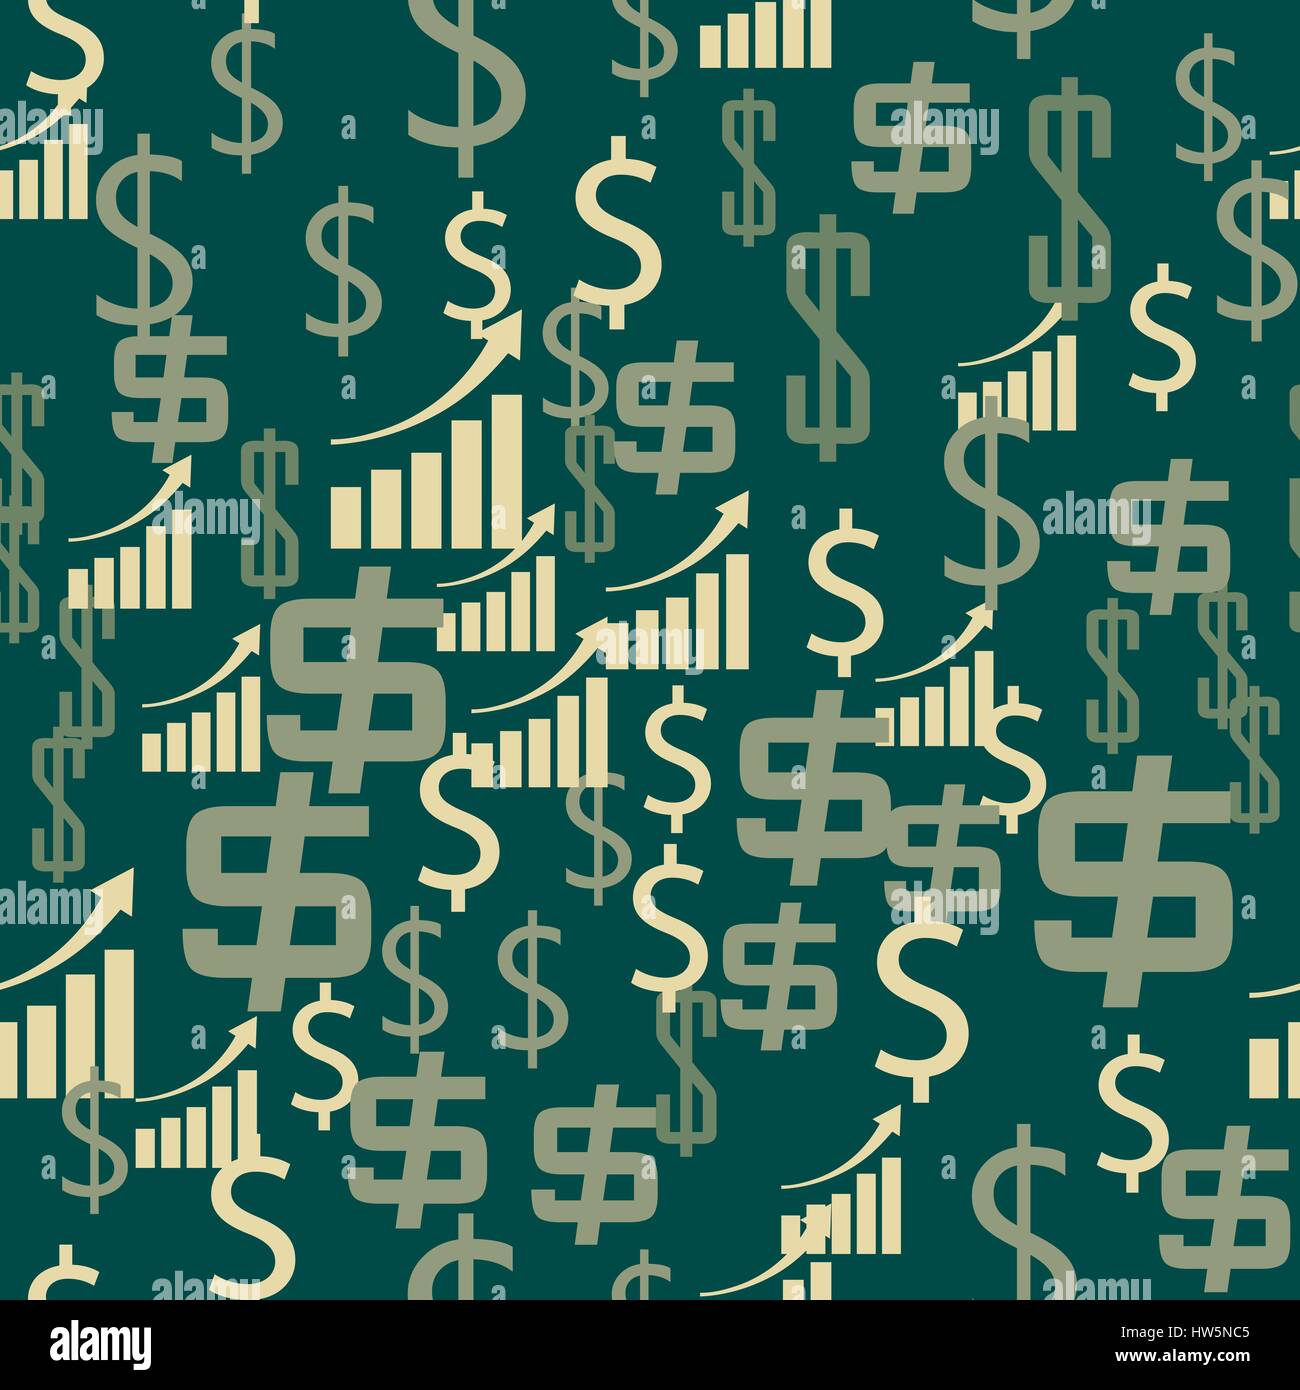 Les symboles de l'argent avec la tendance croissante des revenus sans succès financier. Vector illustration. Illustration de Vecteur